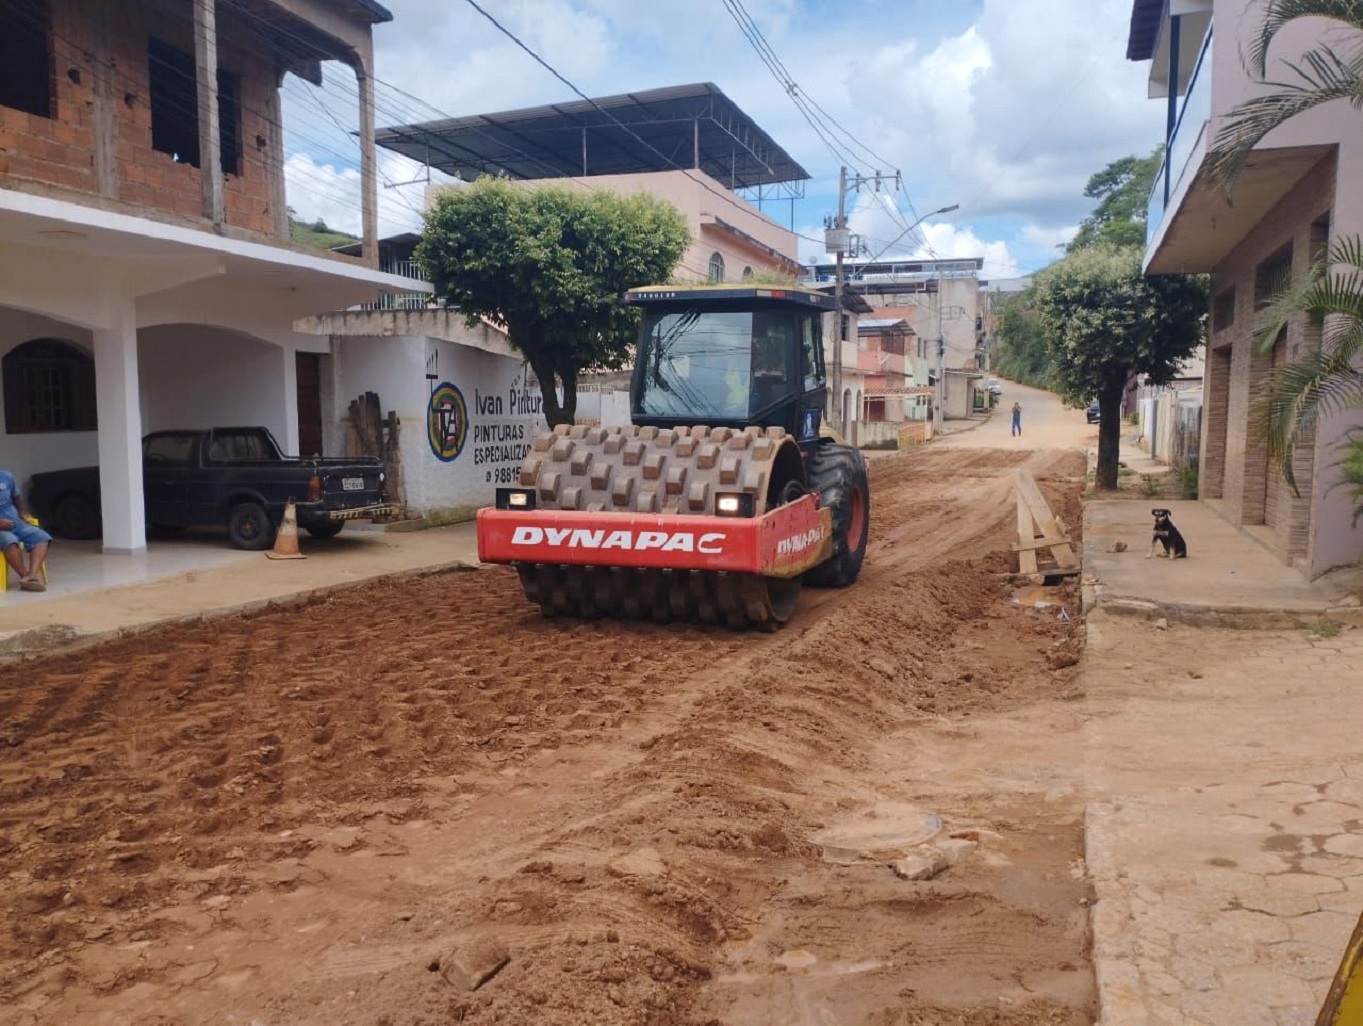 Iniciada as obras de pavimentação asfáltica da rua dos Amaros, no centro de Inhapim